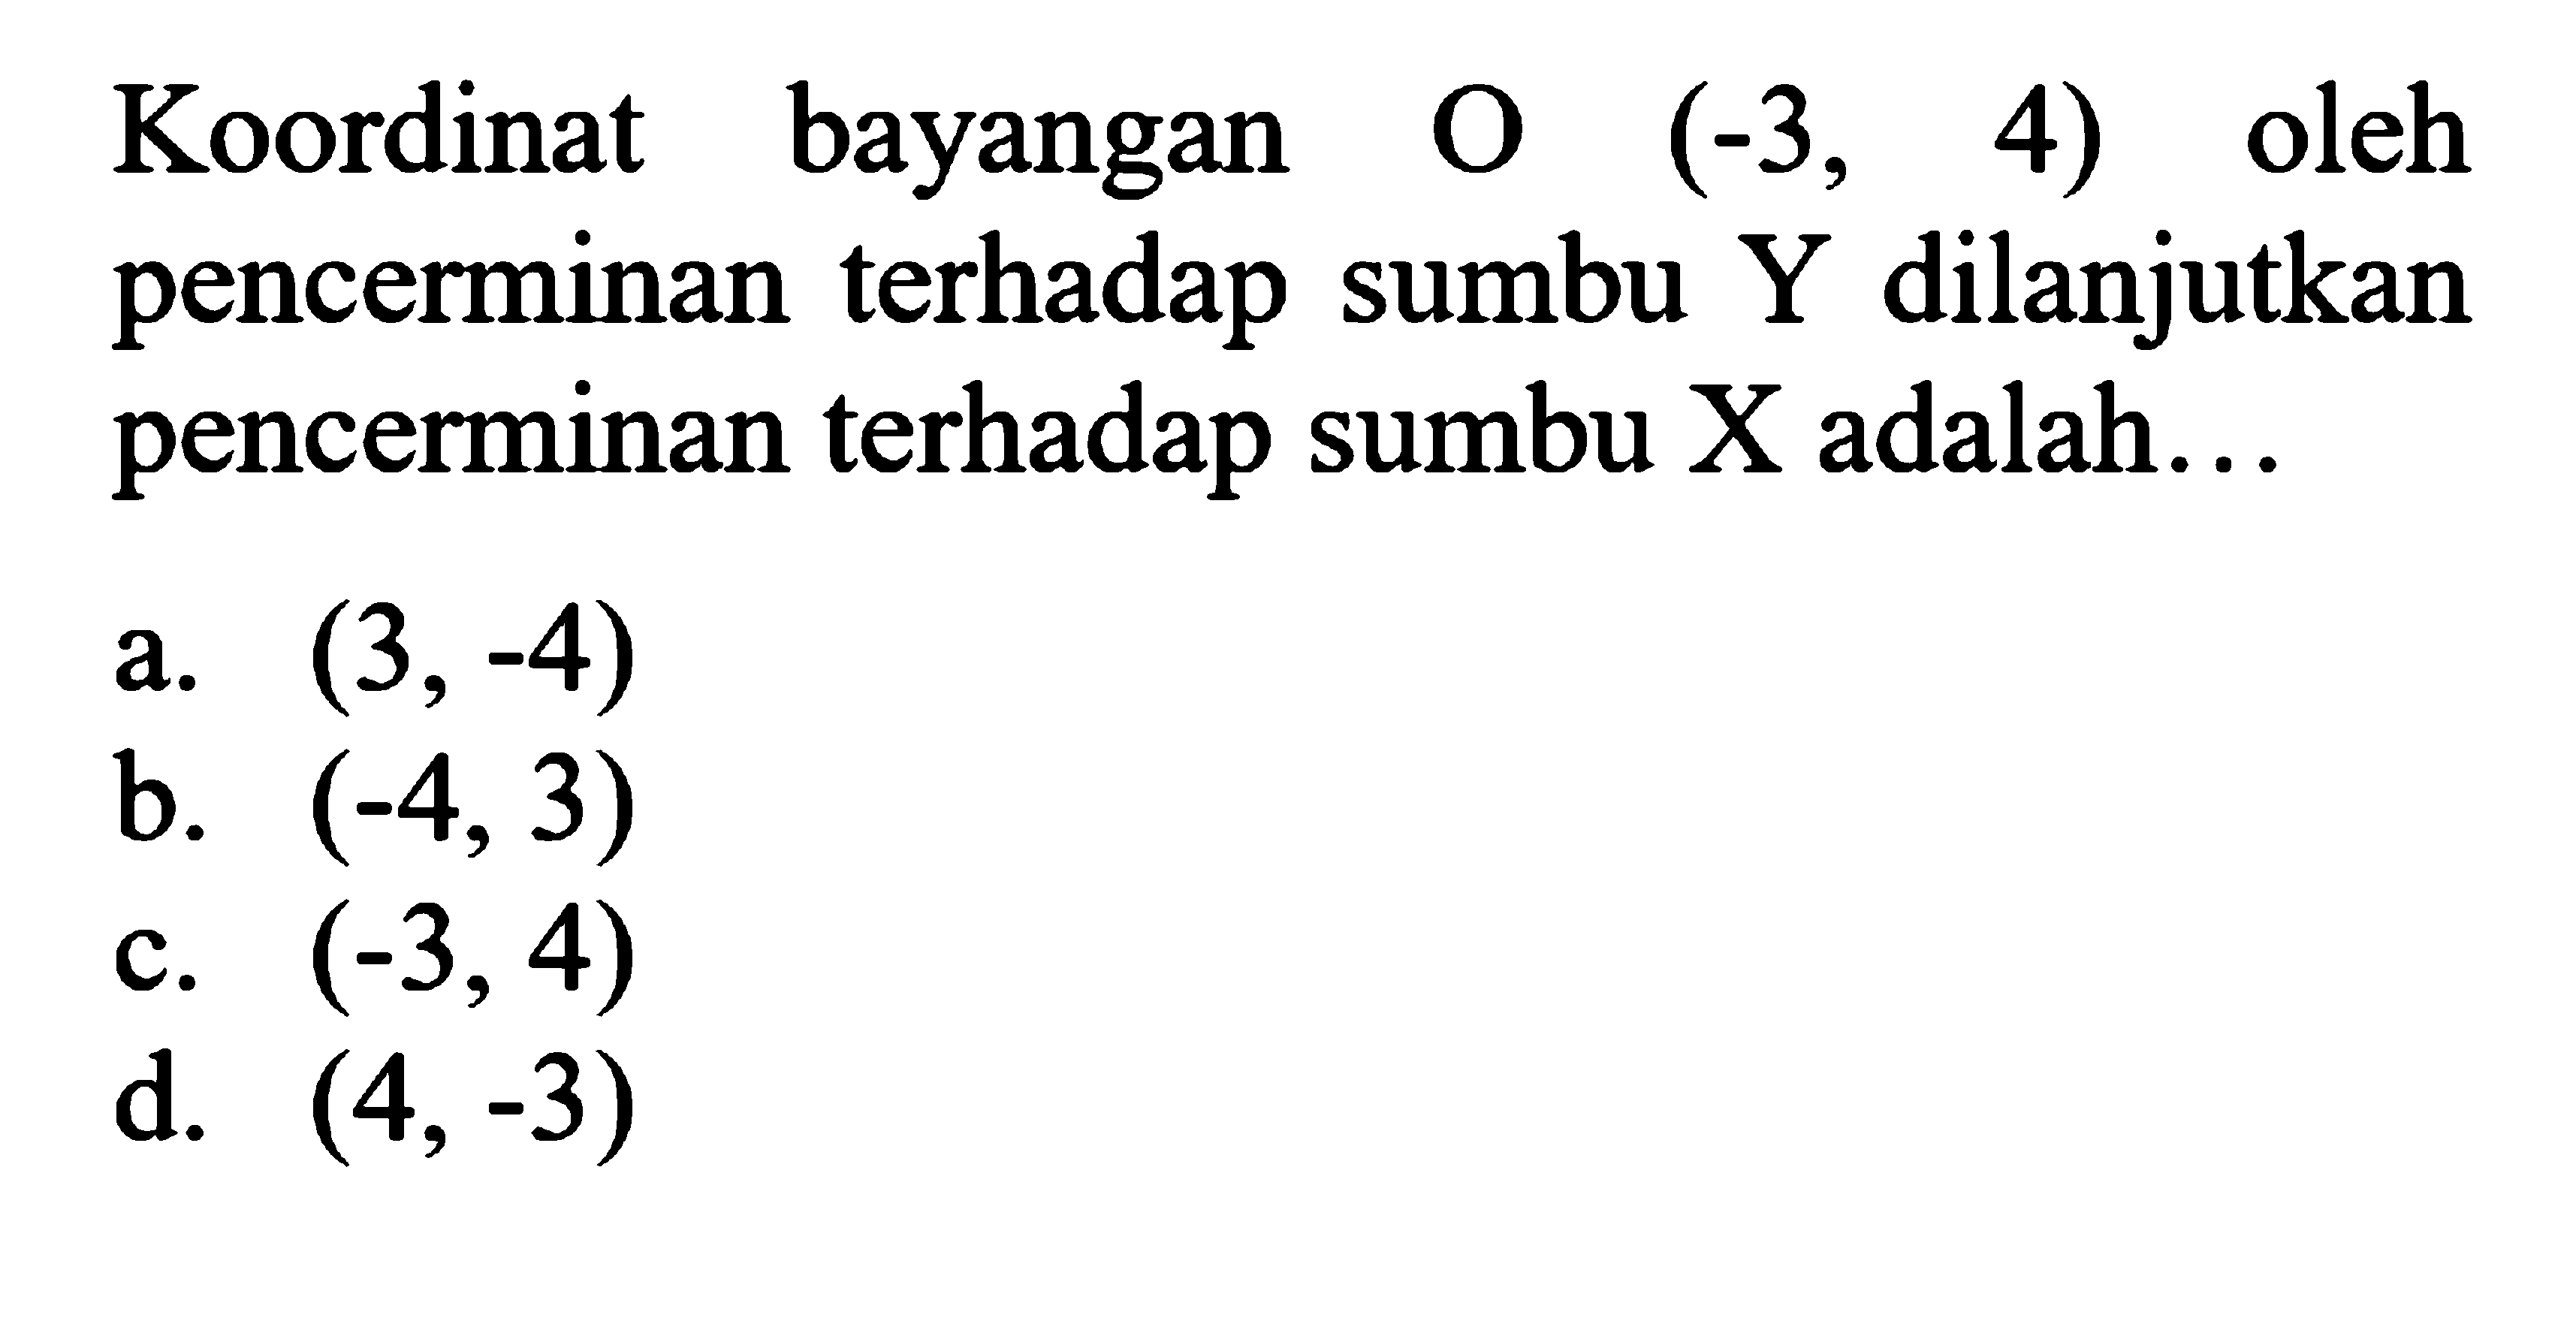 Koordinat bayangan O(-3,4) oleh pencerminan terhadap sumbu Y dilanjutkan pencerminan terhadap sumbu X adalah ... 